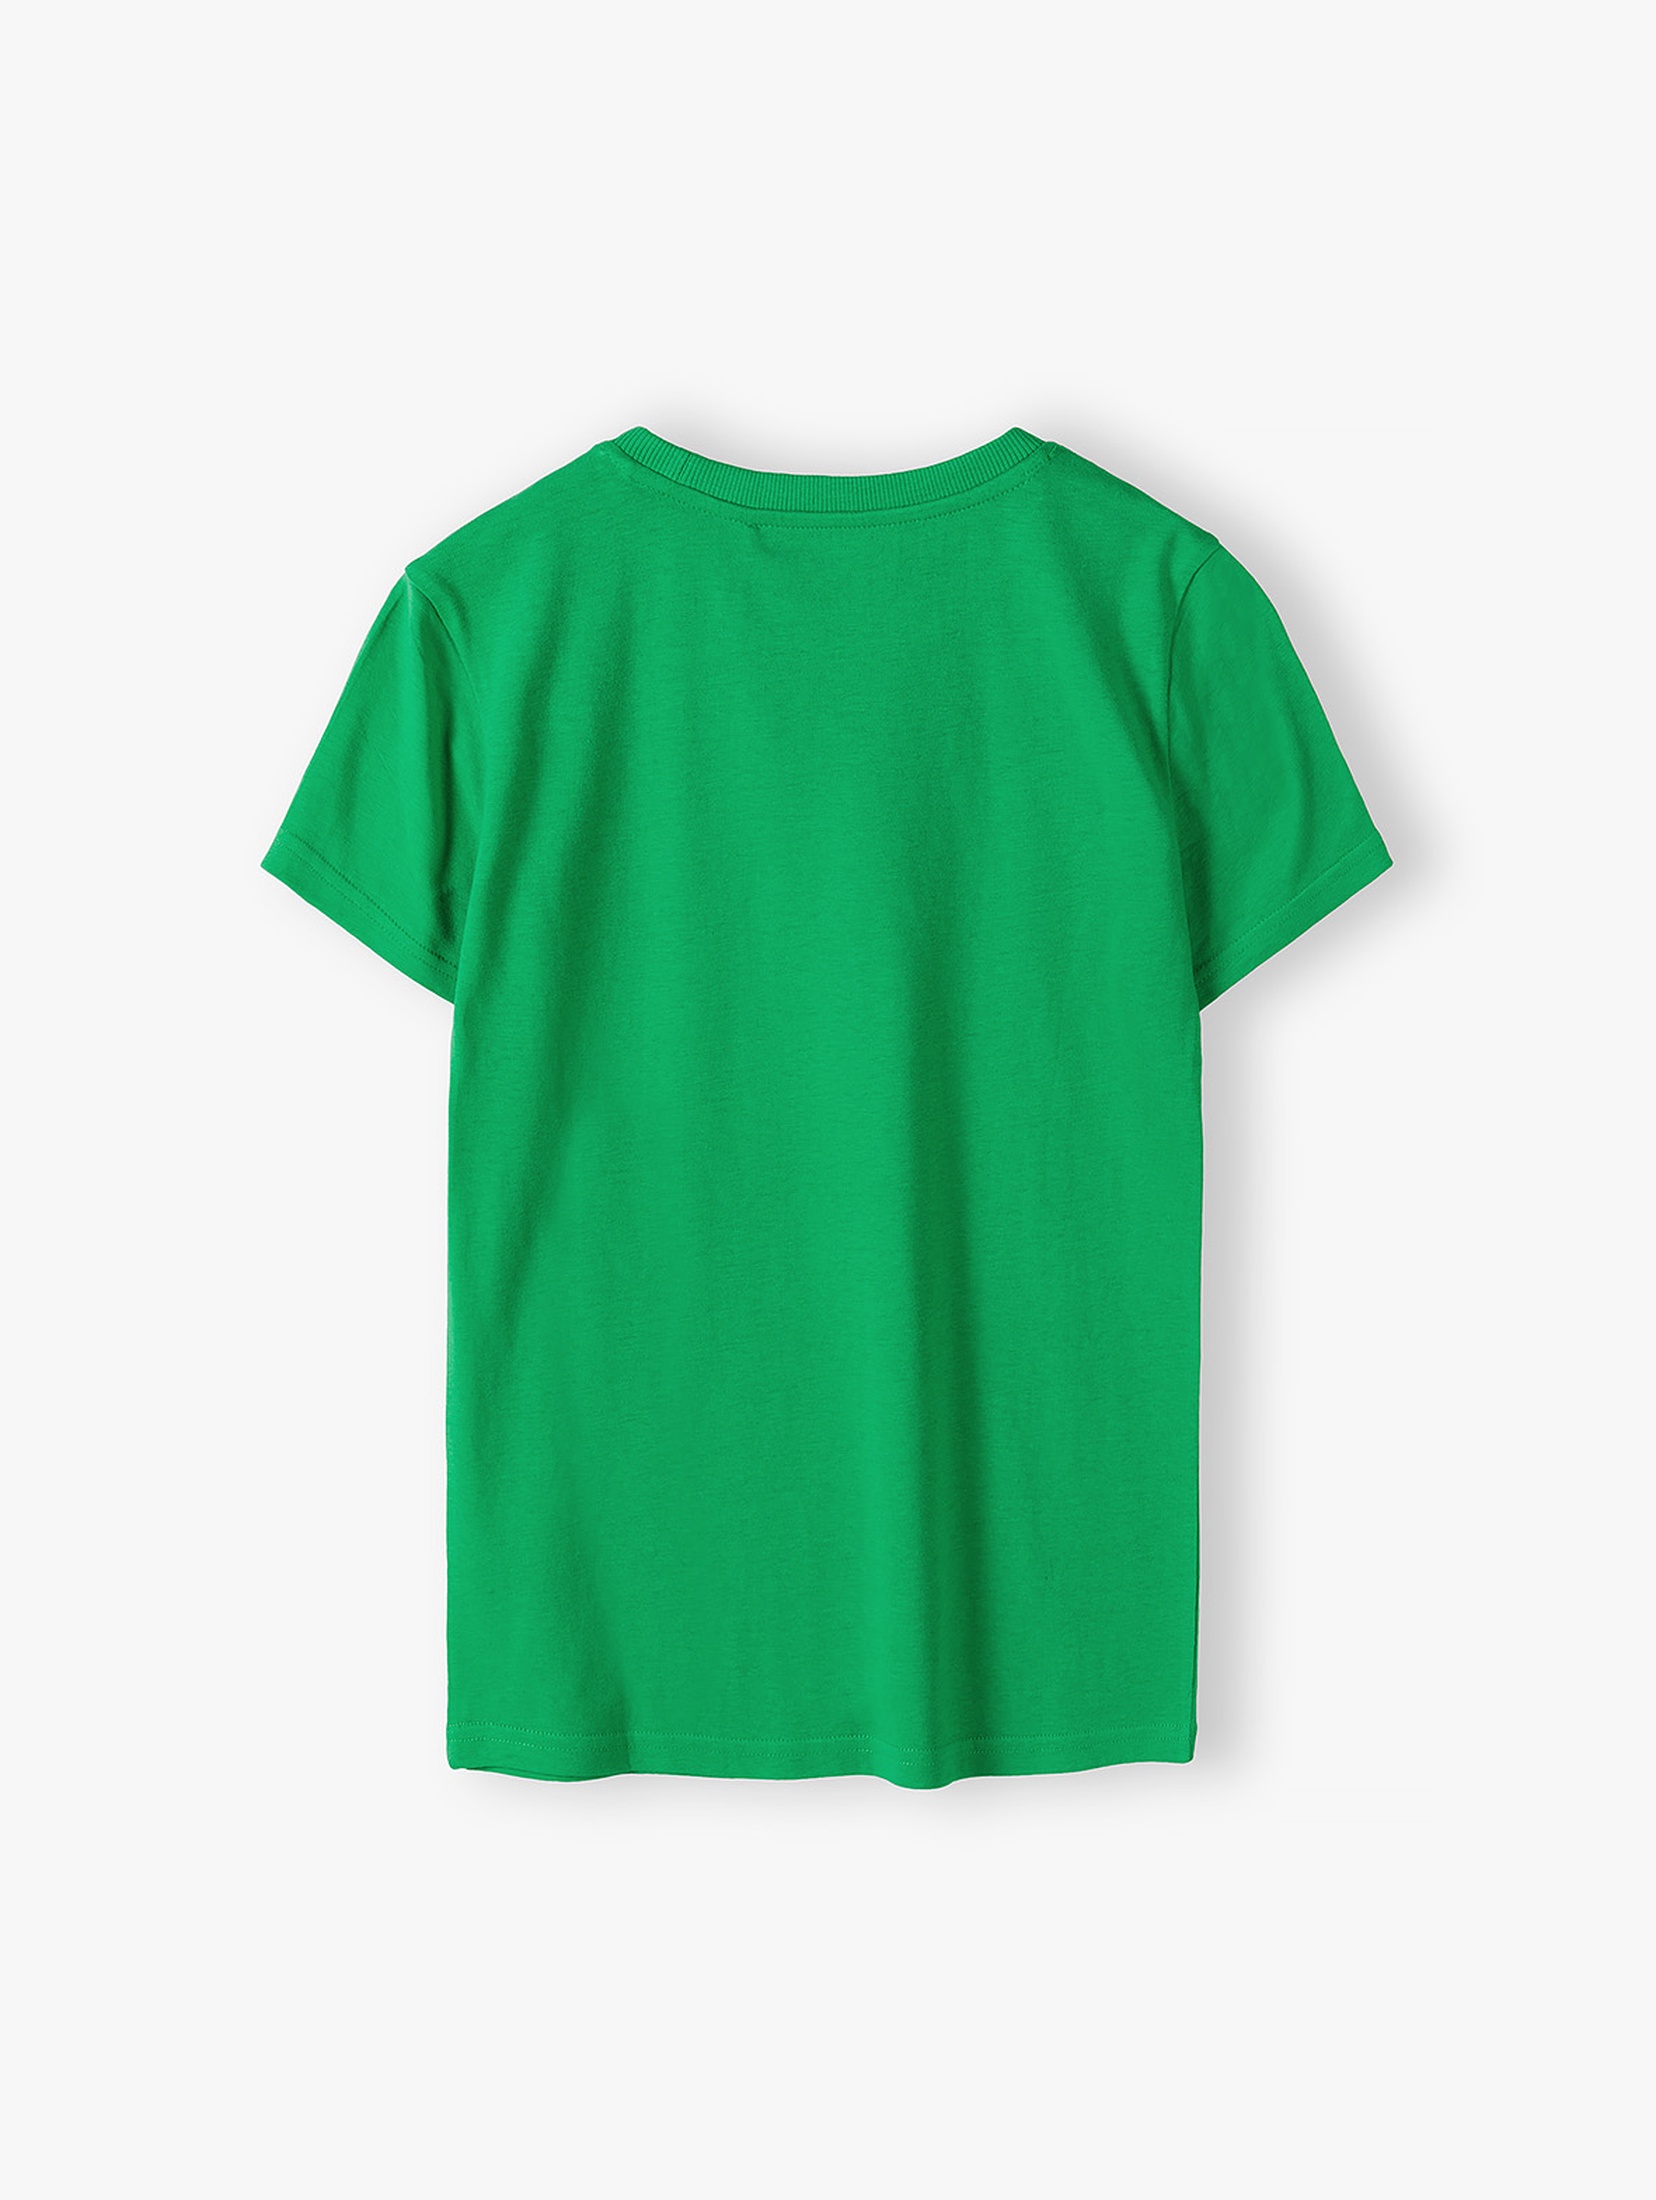 Bawełniany zielony t-shirt dla chłopca - RULES